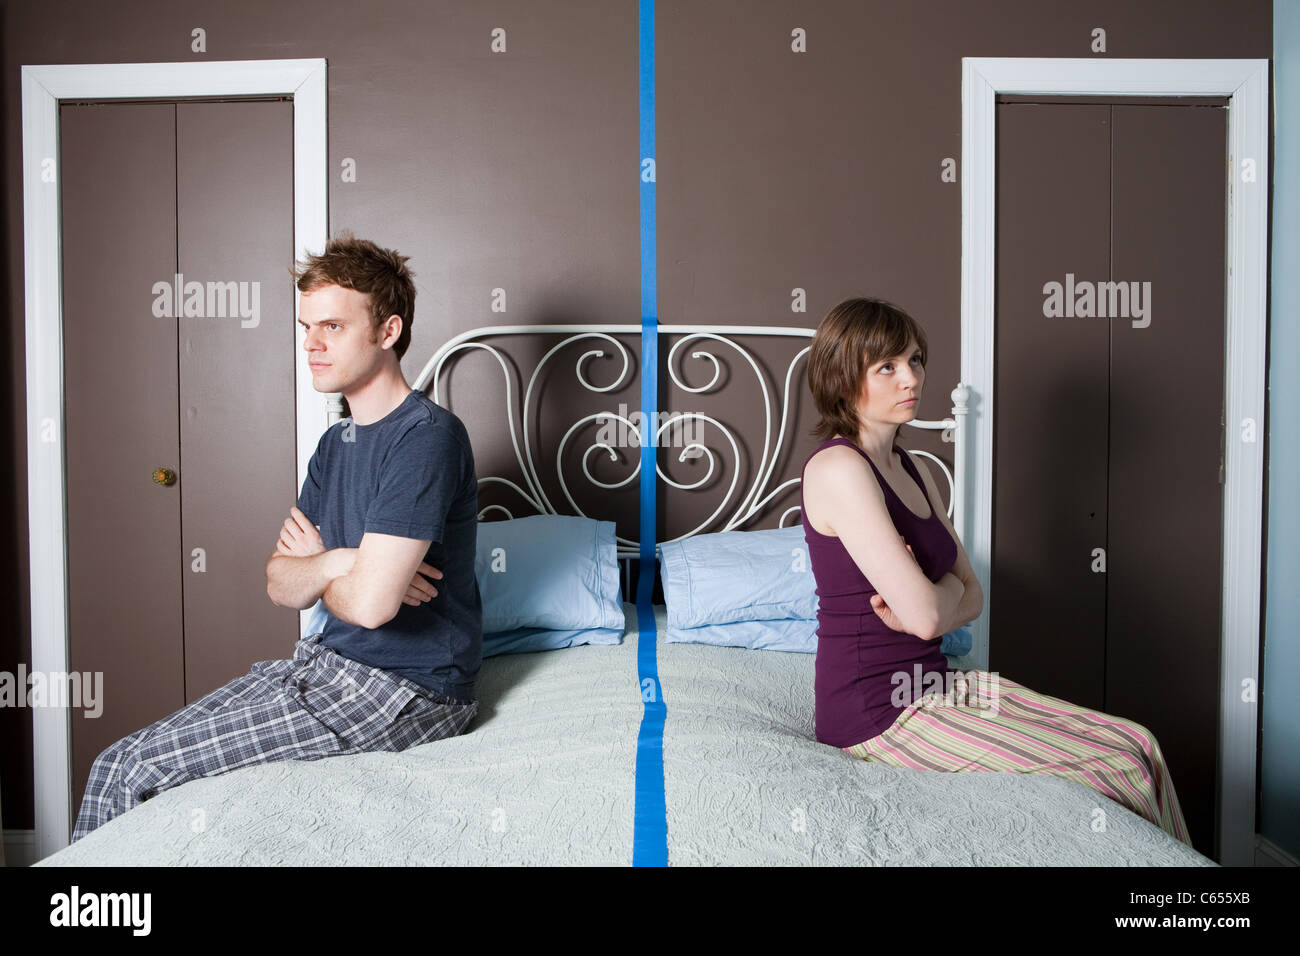 Young couple sitting on bed séparées par ligne bleue Banque D'Images